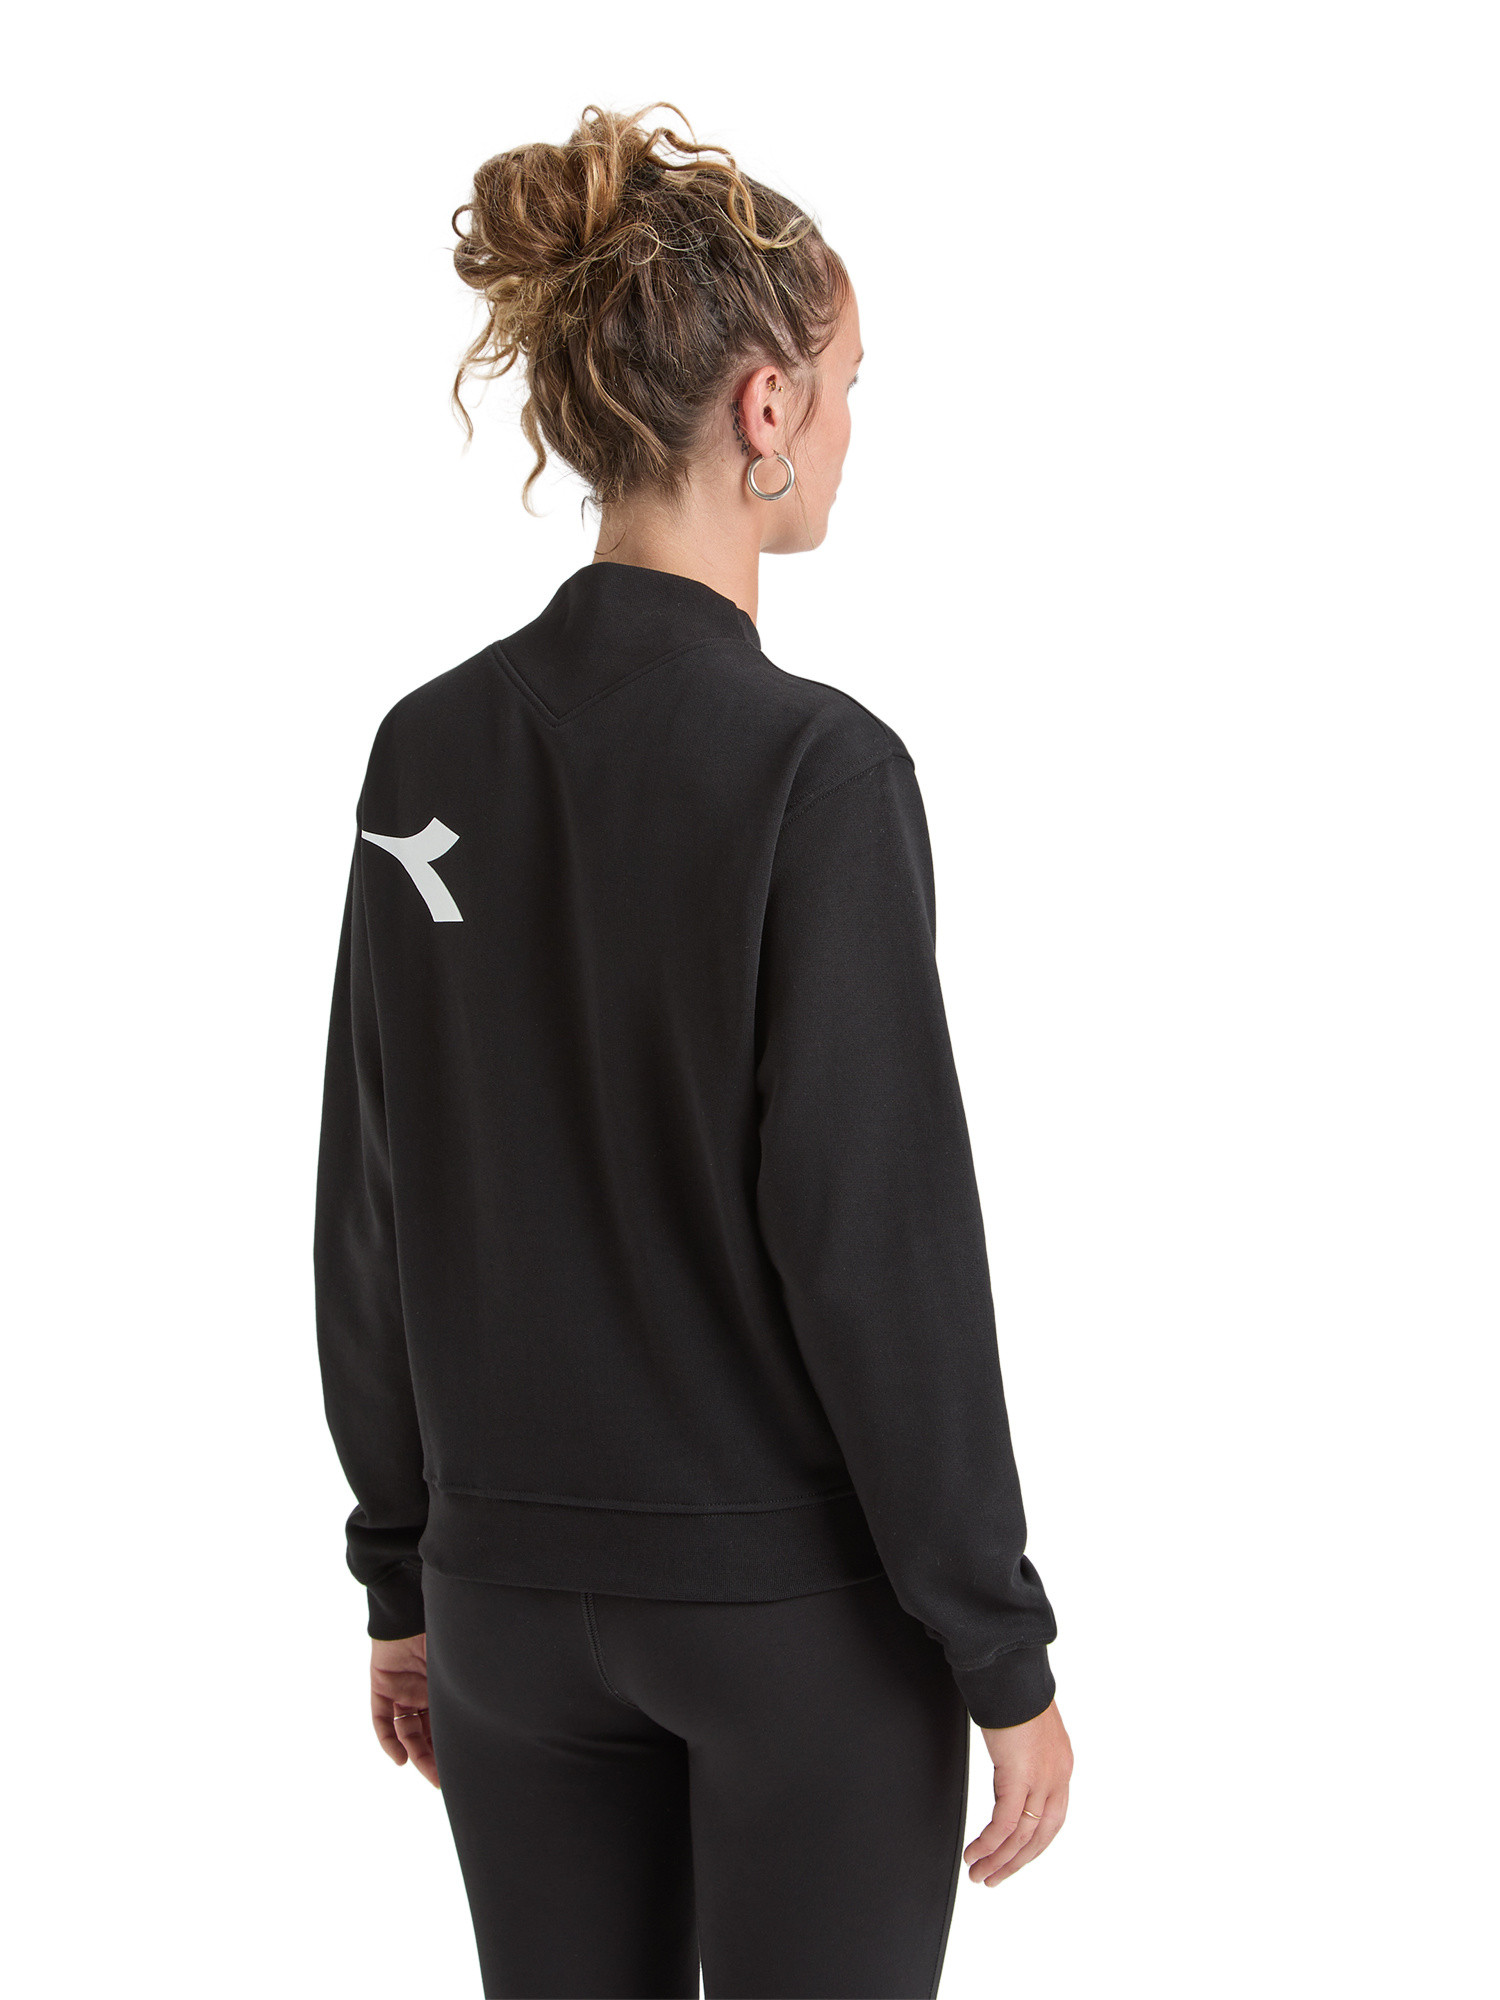 Diadora - Manifesto cotton sweatshirt, Black, large image number 2